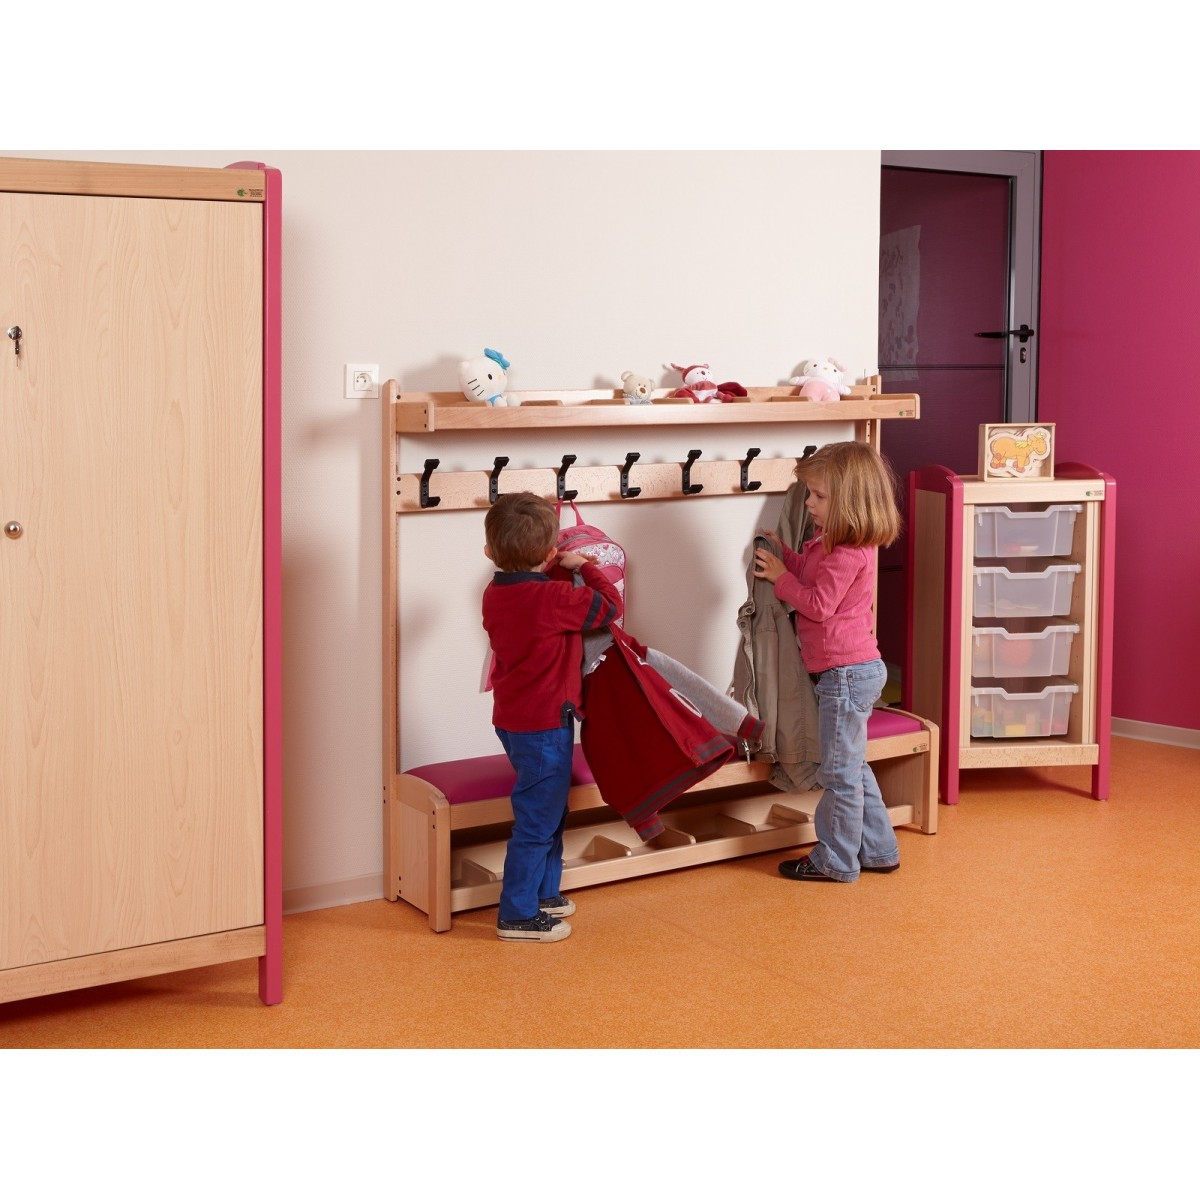 Banc vestiaire pour enfants - 1 - Banc vestiaire pour enfants inclus 1 étagère à 8 casiers en partie haute et 1 étagère à chauss